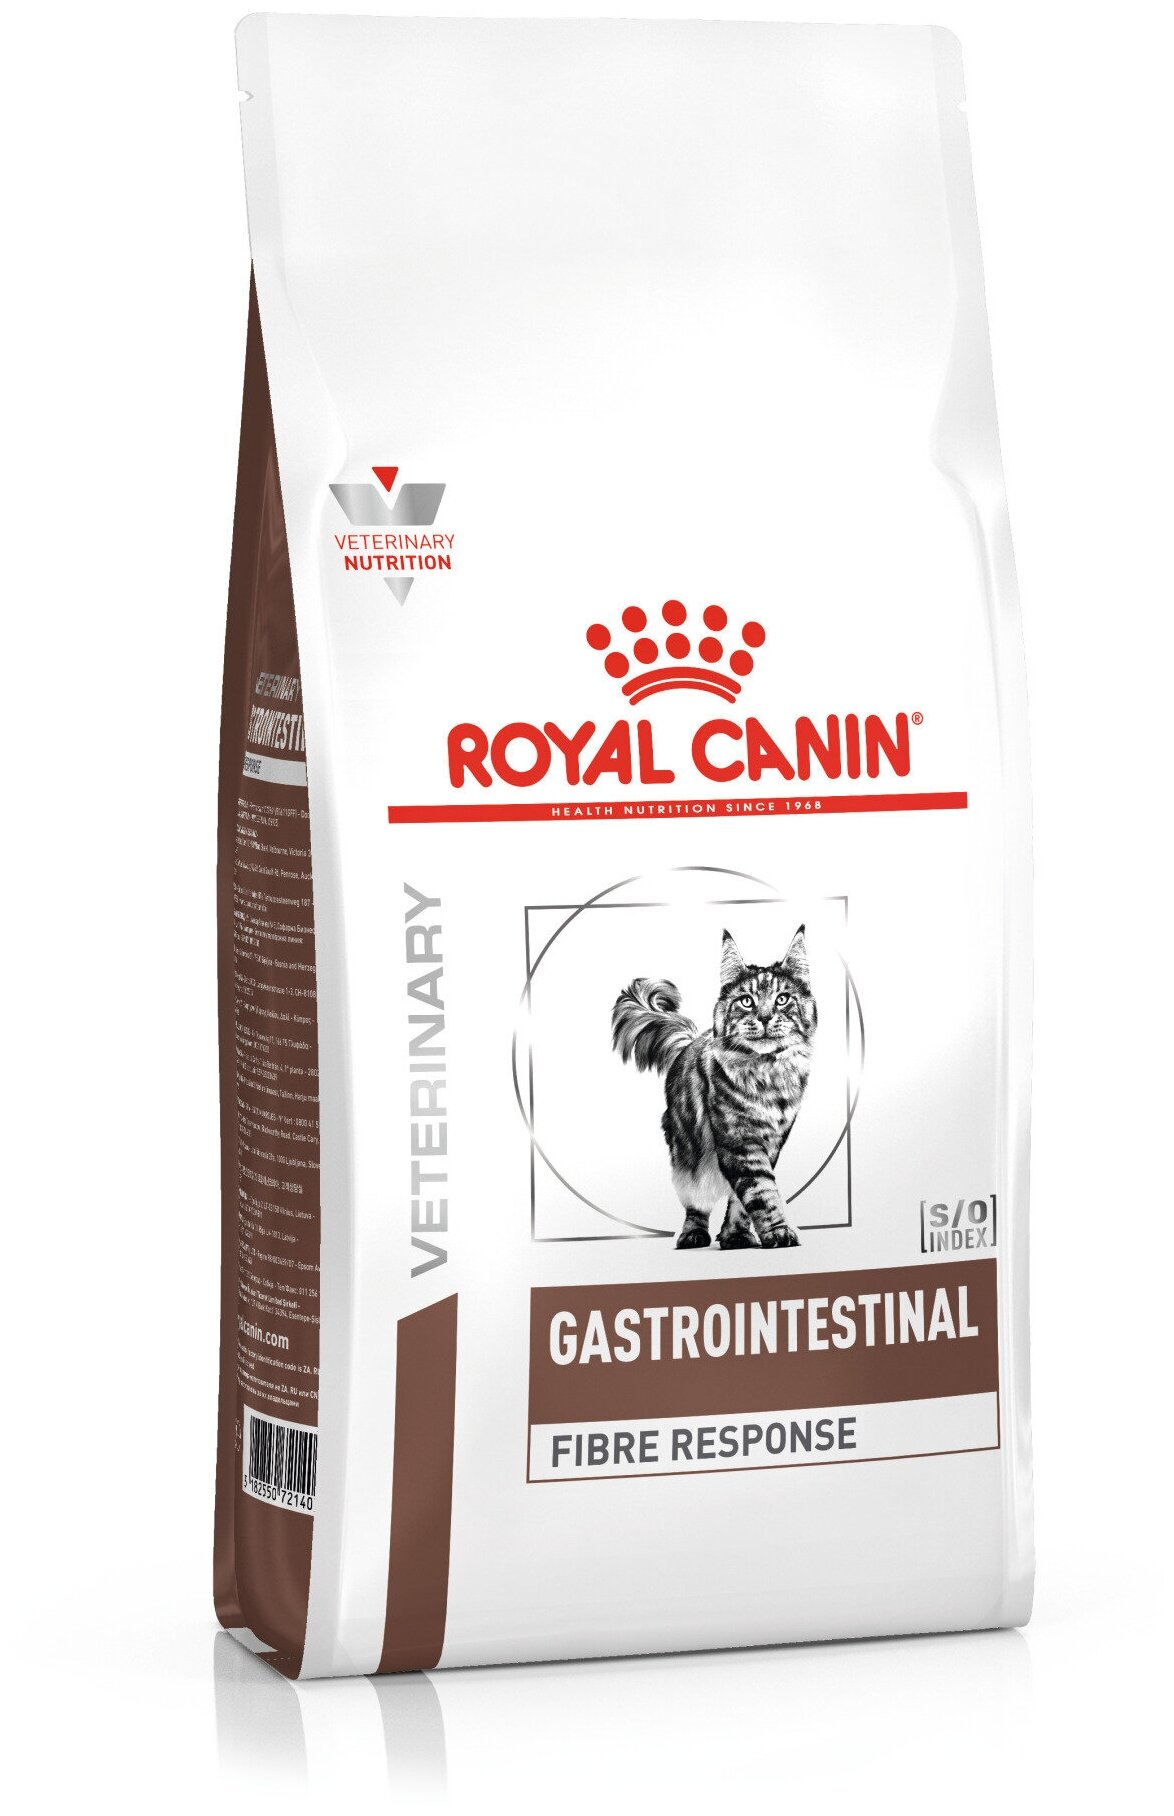 ROYAL CANIN VD GASTRO INTESTINAL FIBRE RESPONSE FR31 400 г ветеринарная диета для кошек при острых и хронических запорах 5шт